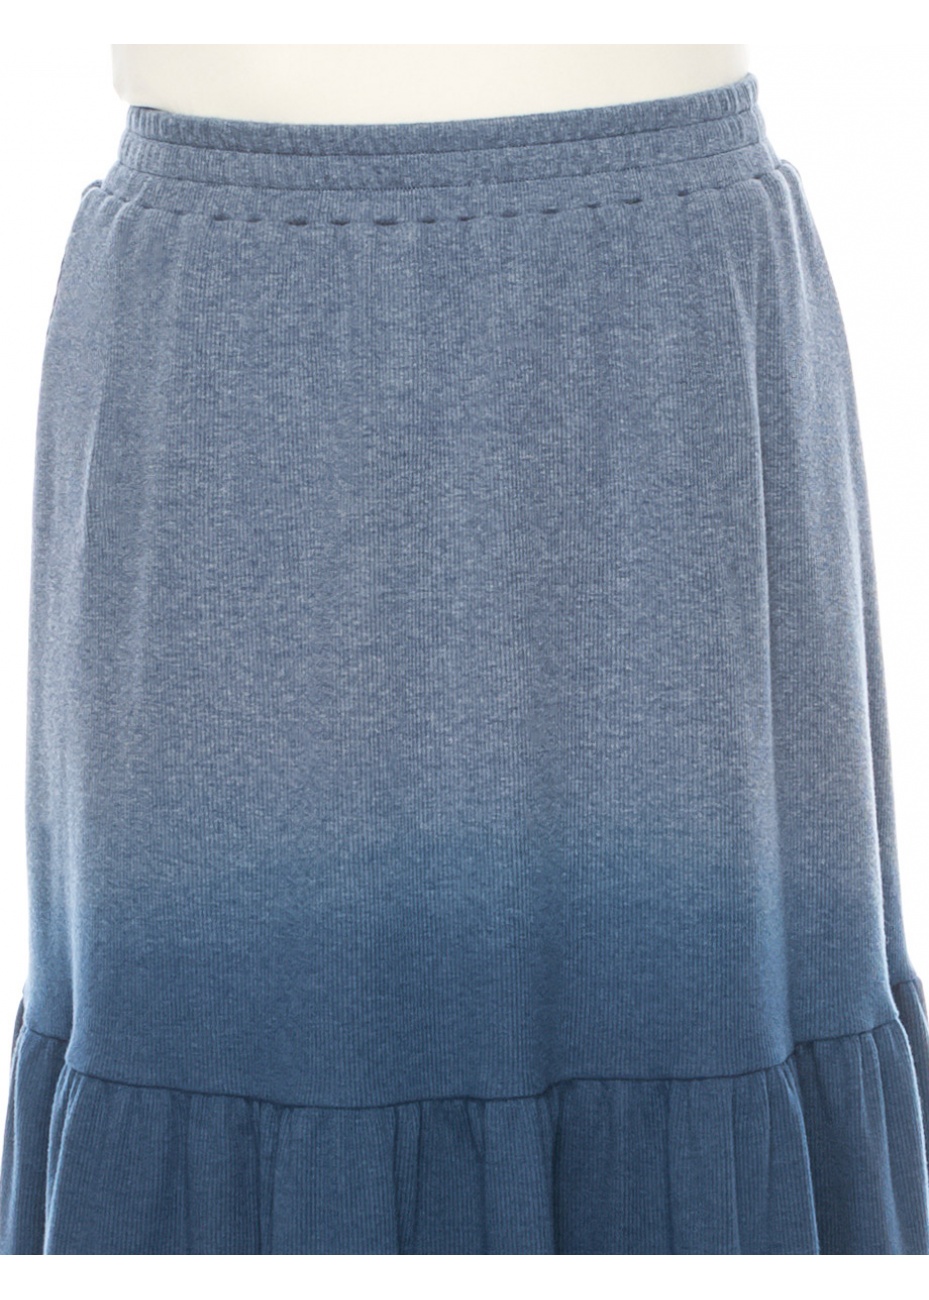 Blue Flared Knit Skirt